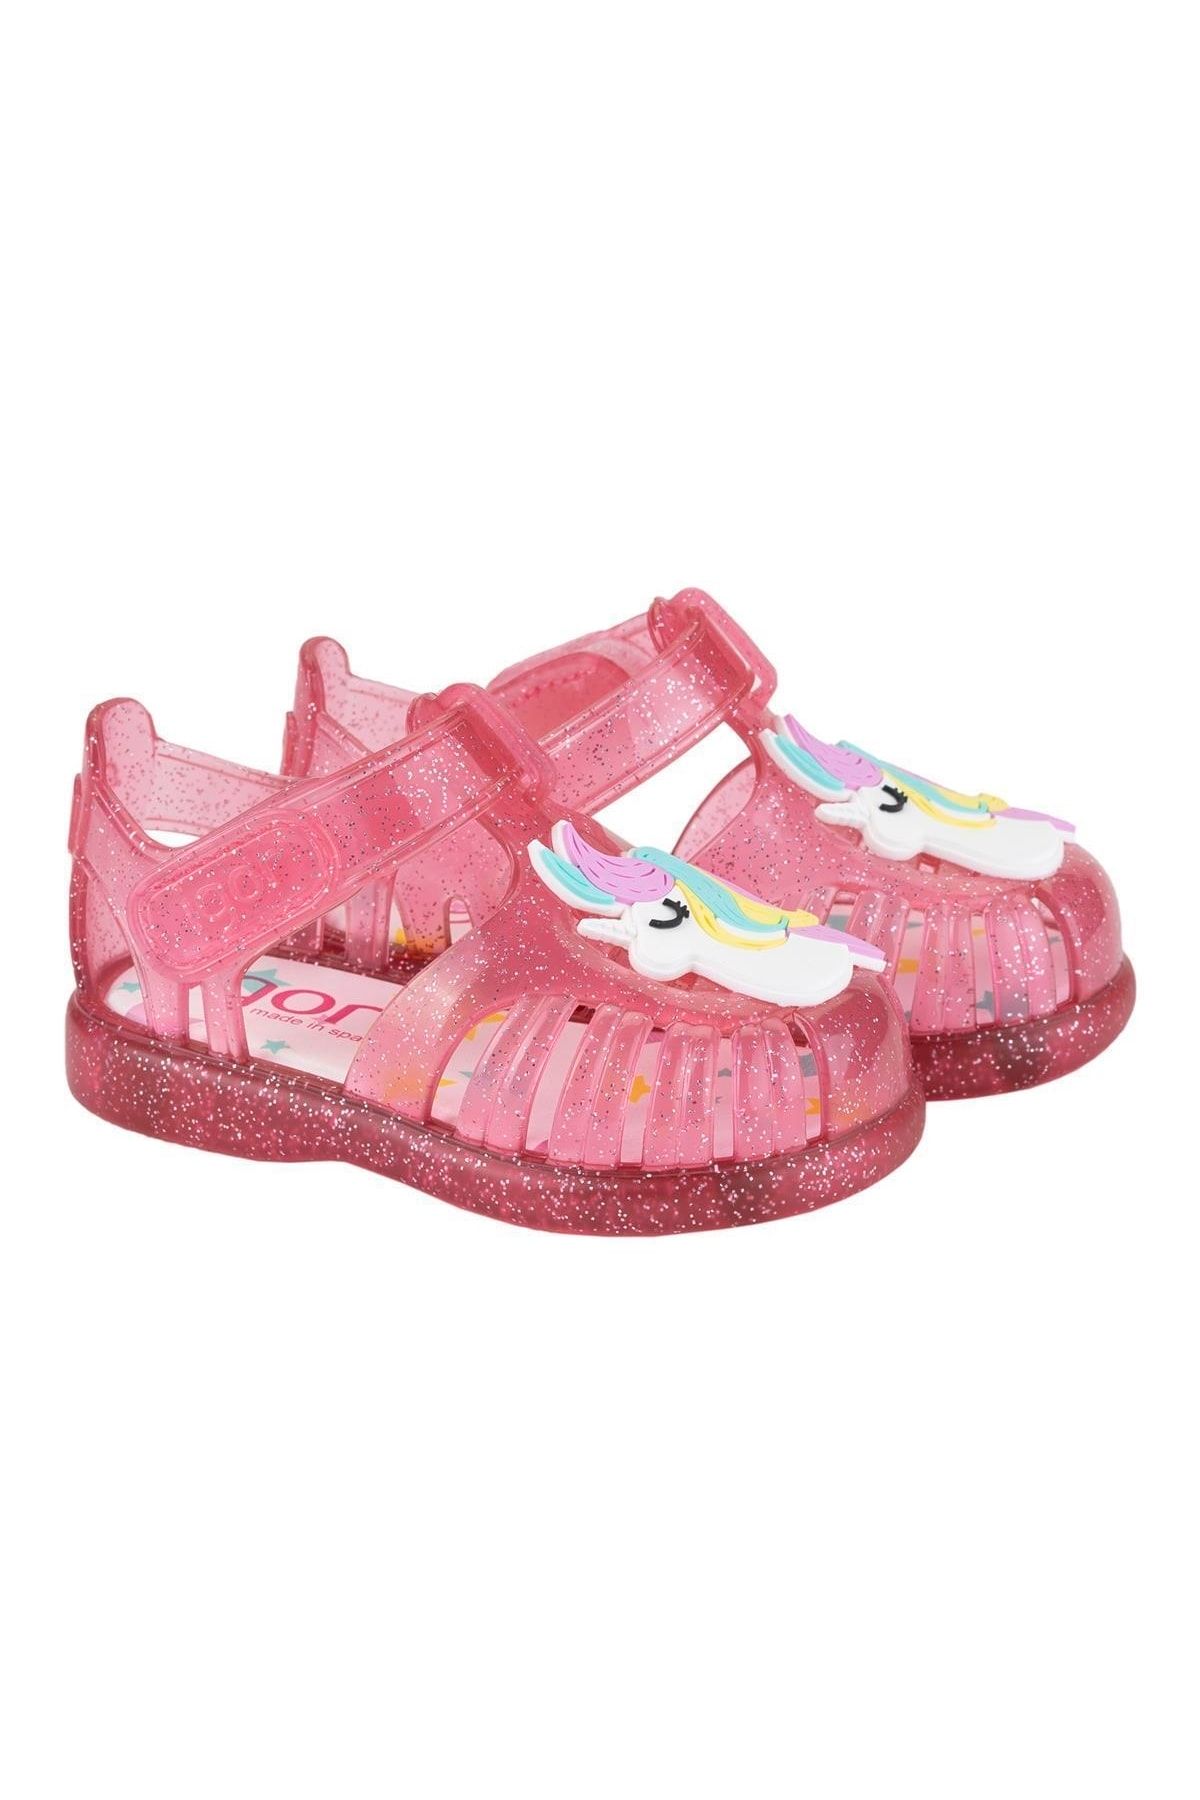 IGOR Tobby Gloss Unicornio Kız Bebek Çocuk Sandalet Fuşya